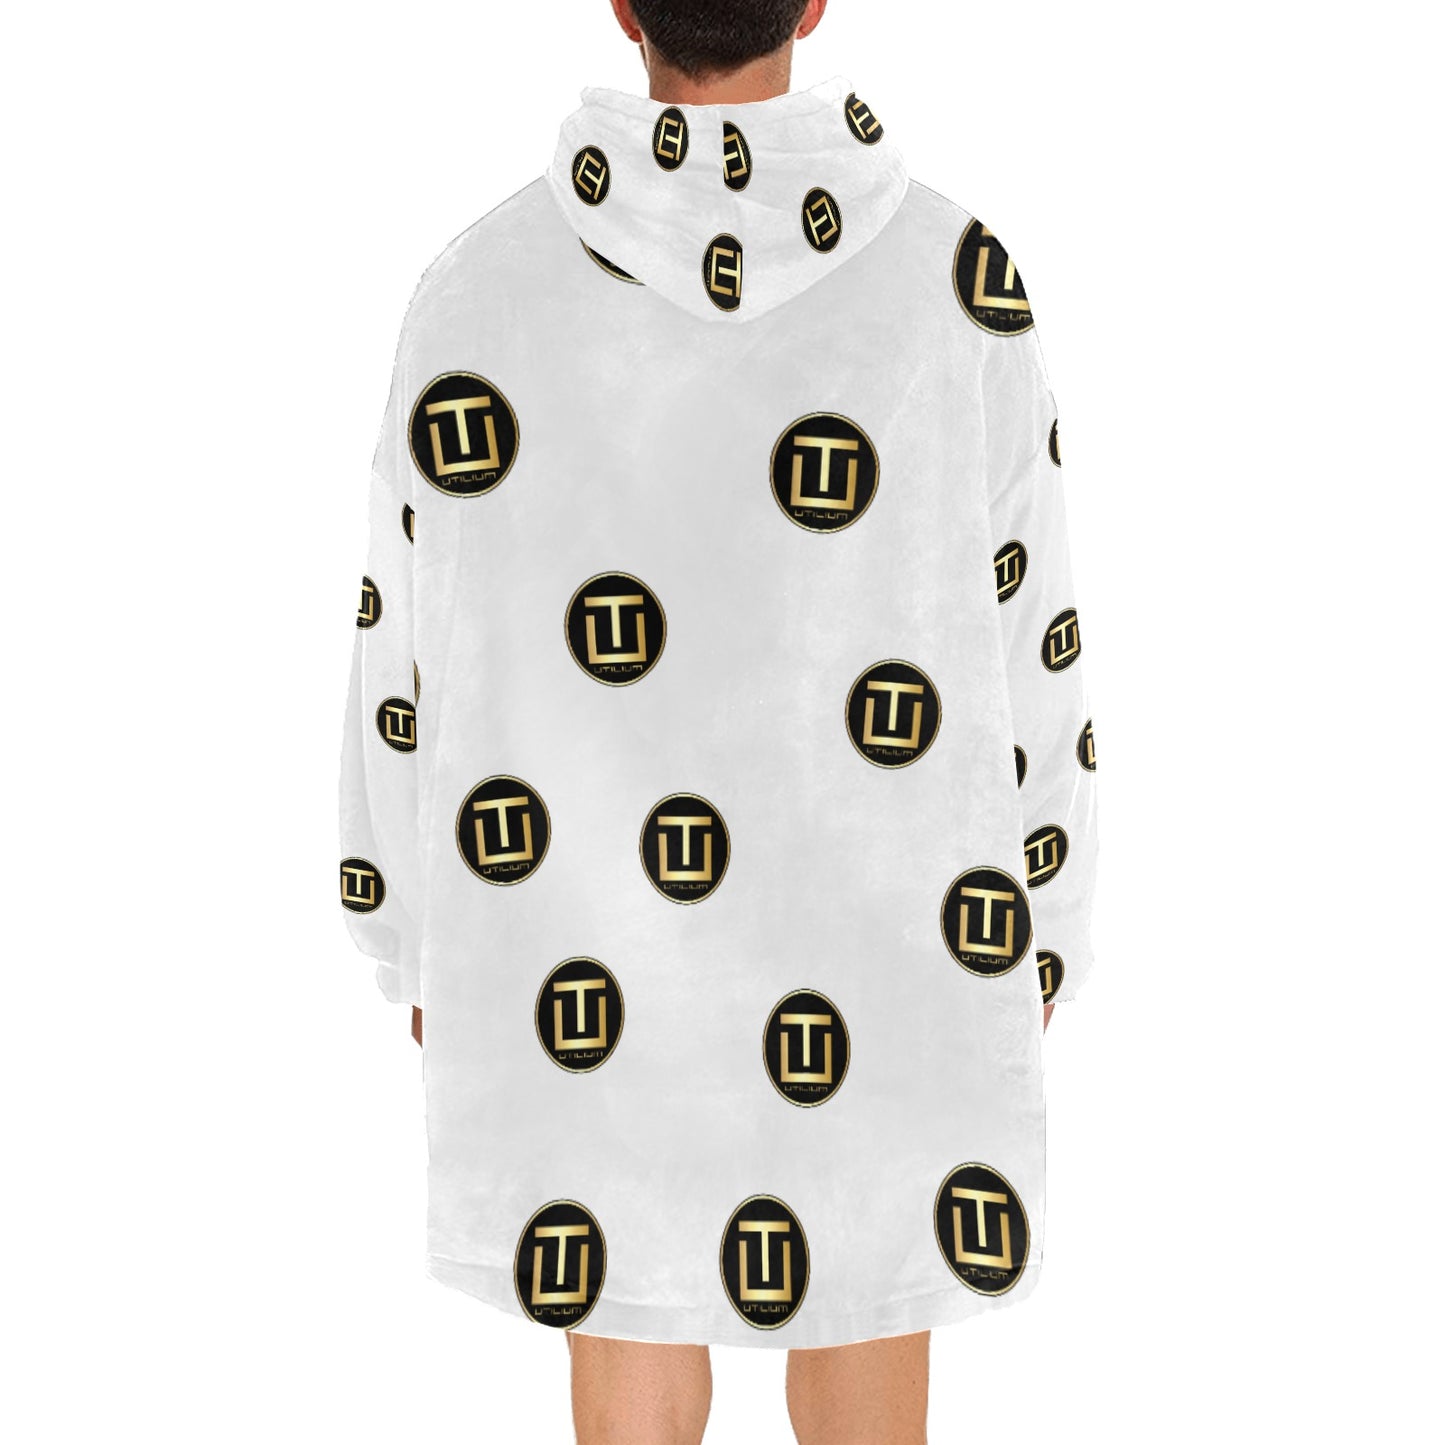 Utilium Blanket Hoodie for Men - Oodie